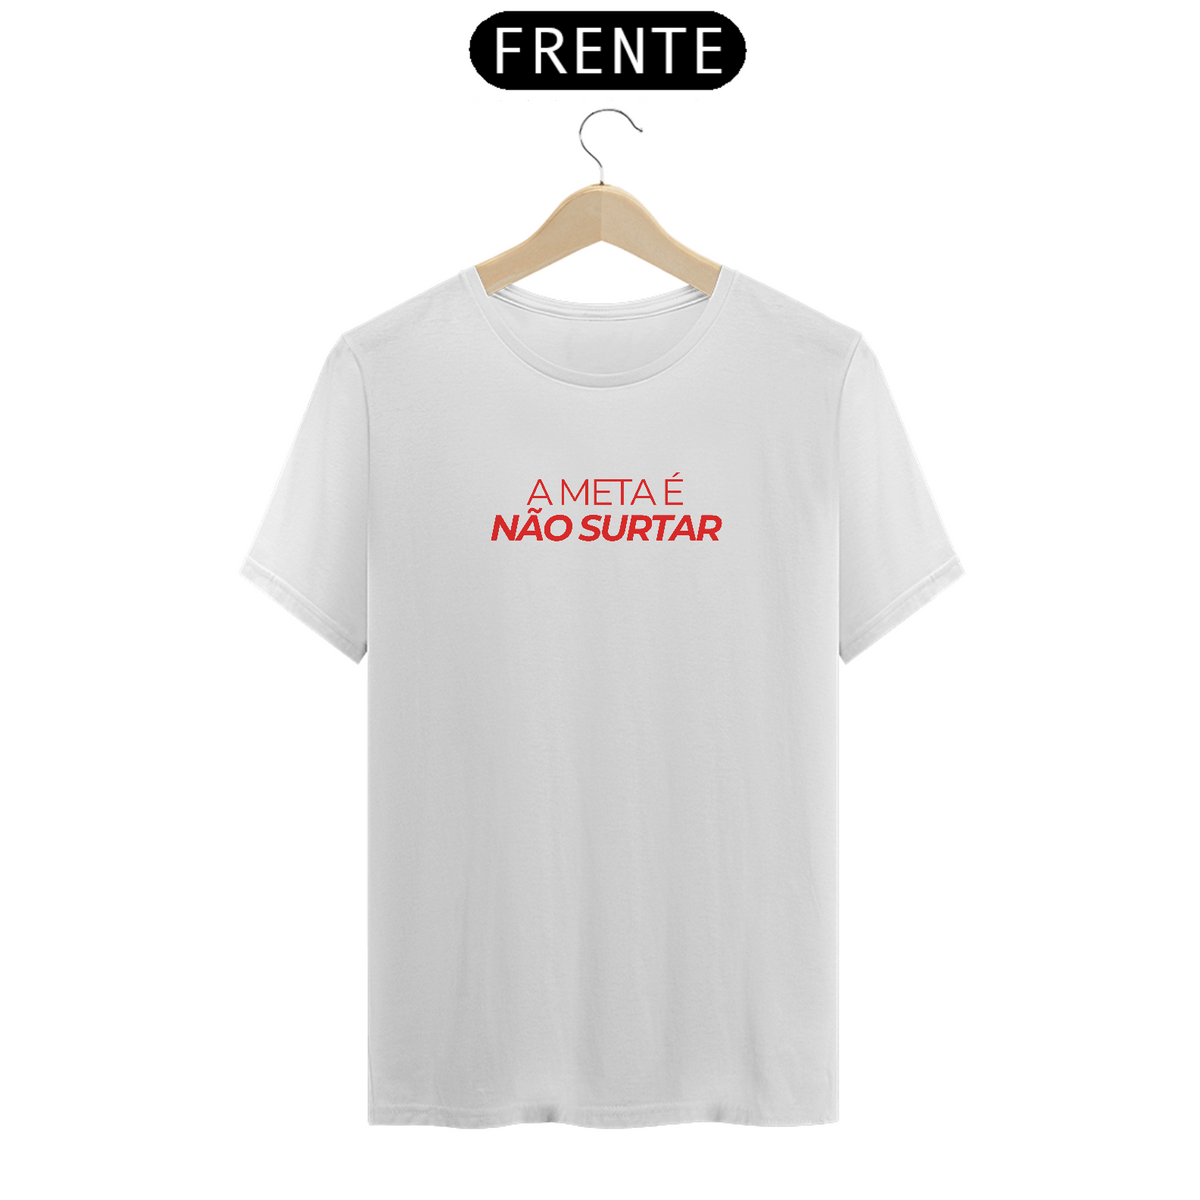 Nome do produto: Camiseta A meta é não surtar